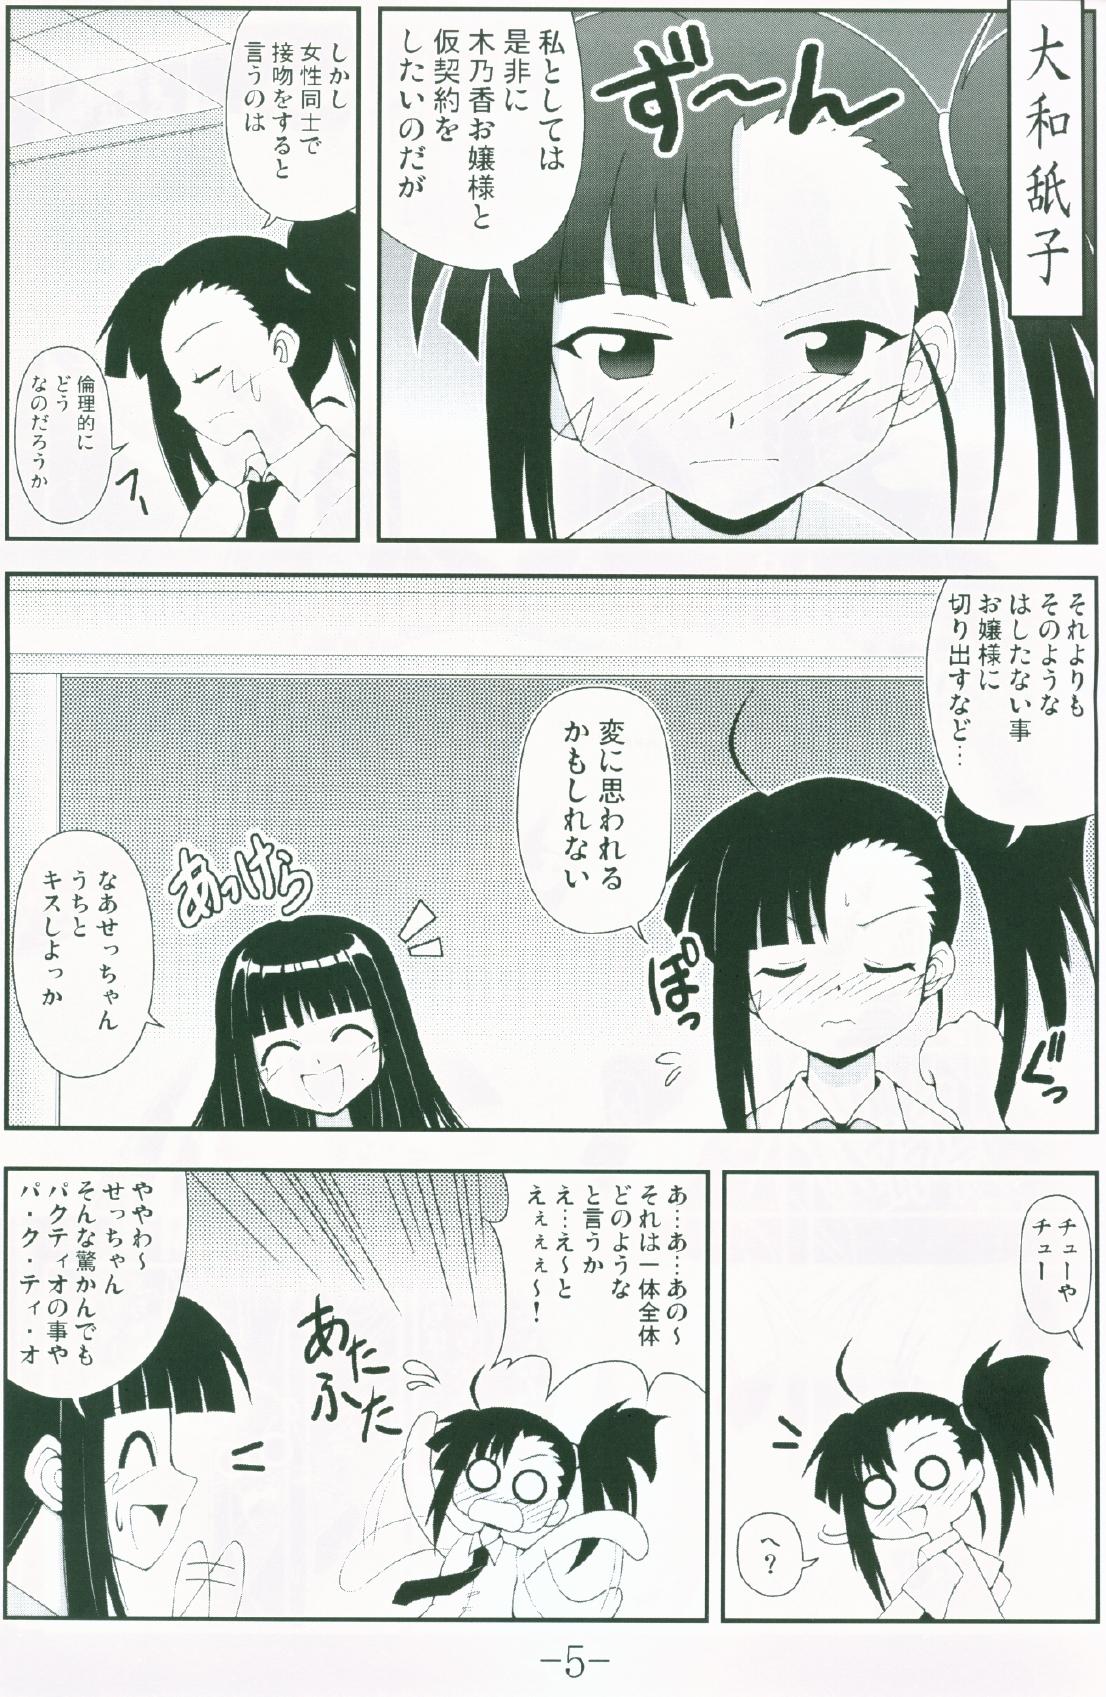 Teasing Gurimaga ~ Yamato Shiko - Mahou sensei negima Gay Tattoos - Page 3